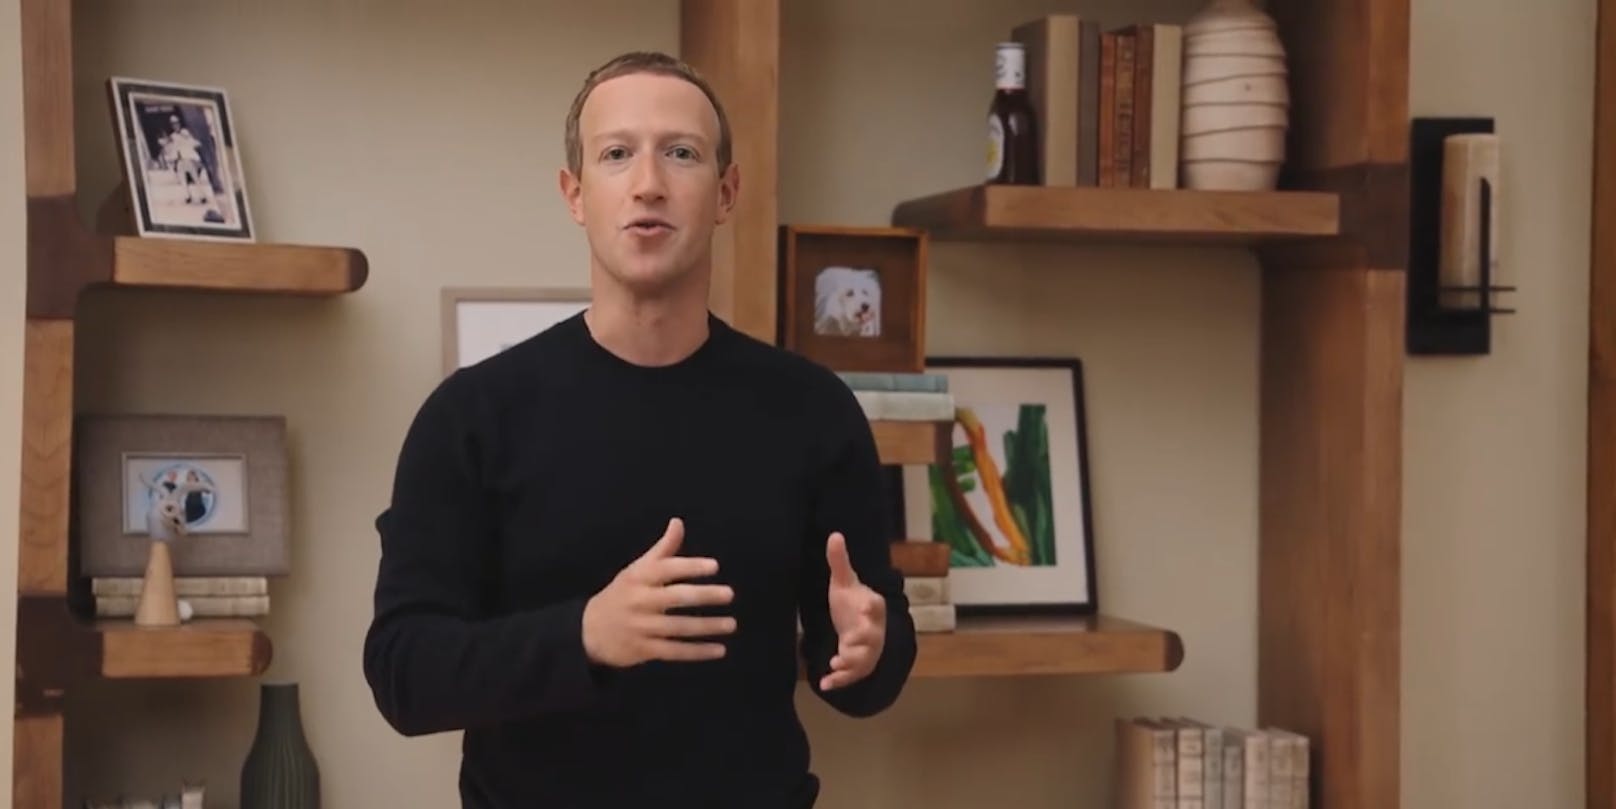 Mark Zuckerberg, ganz bestimmt kein Echsenmensch, unterstreicht das mit einer Flasche BBQ-Sauce in seinem Bücherregal.